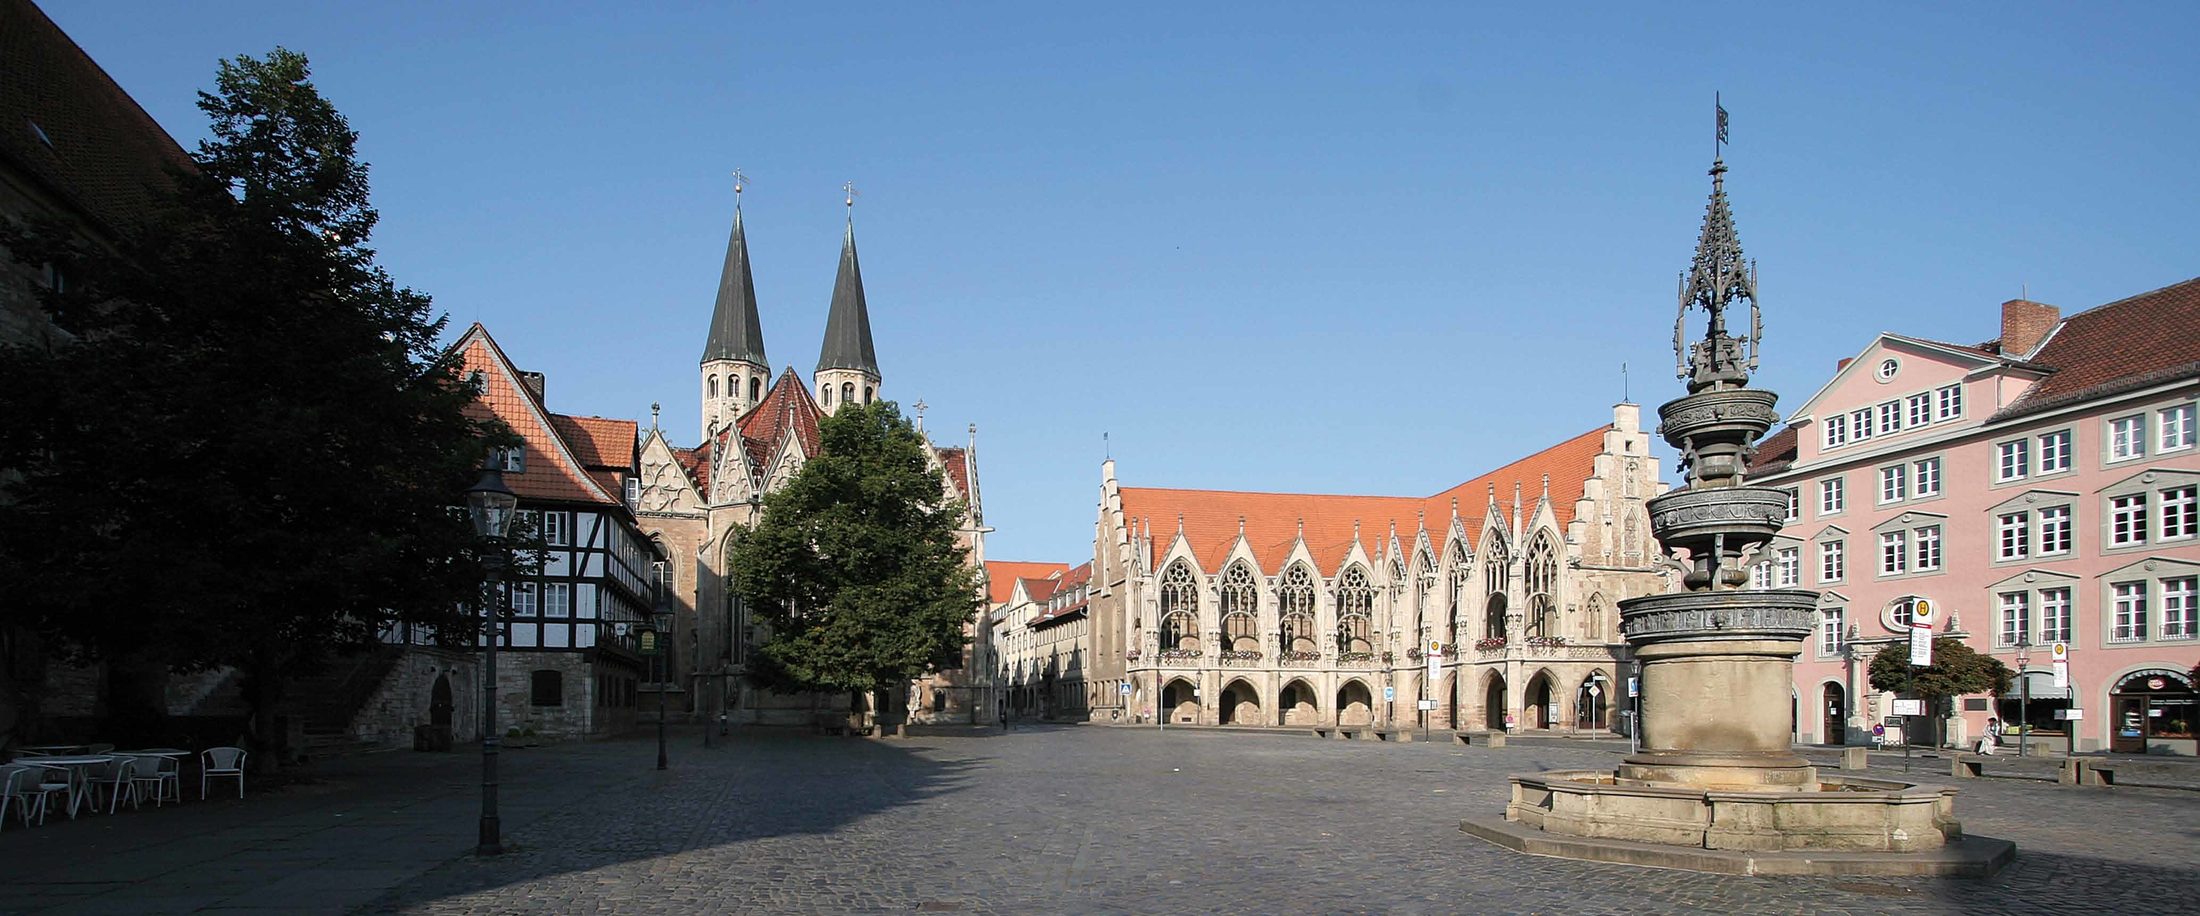 Der Altstadtmarkt – seit dem Mittelalter bis heute ein Mittelpunkt des öffentlichen Lebens in Braunschweig. (Wird bei Klick vergrößert)